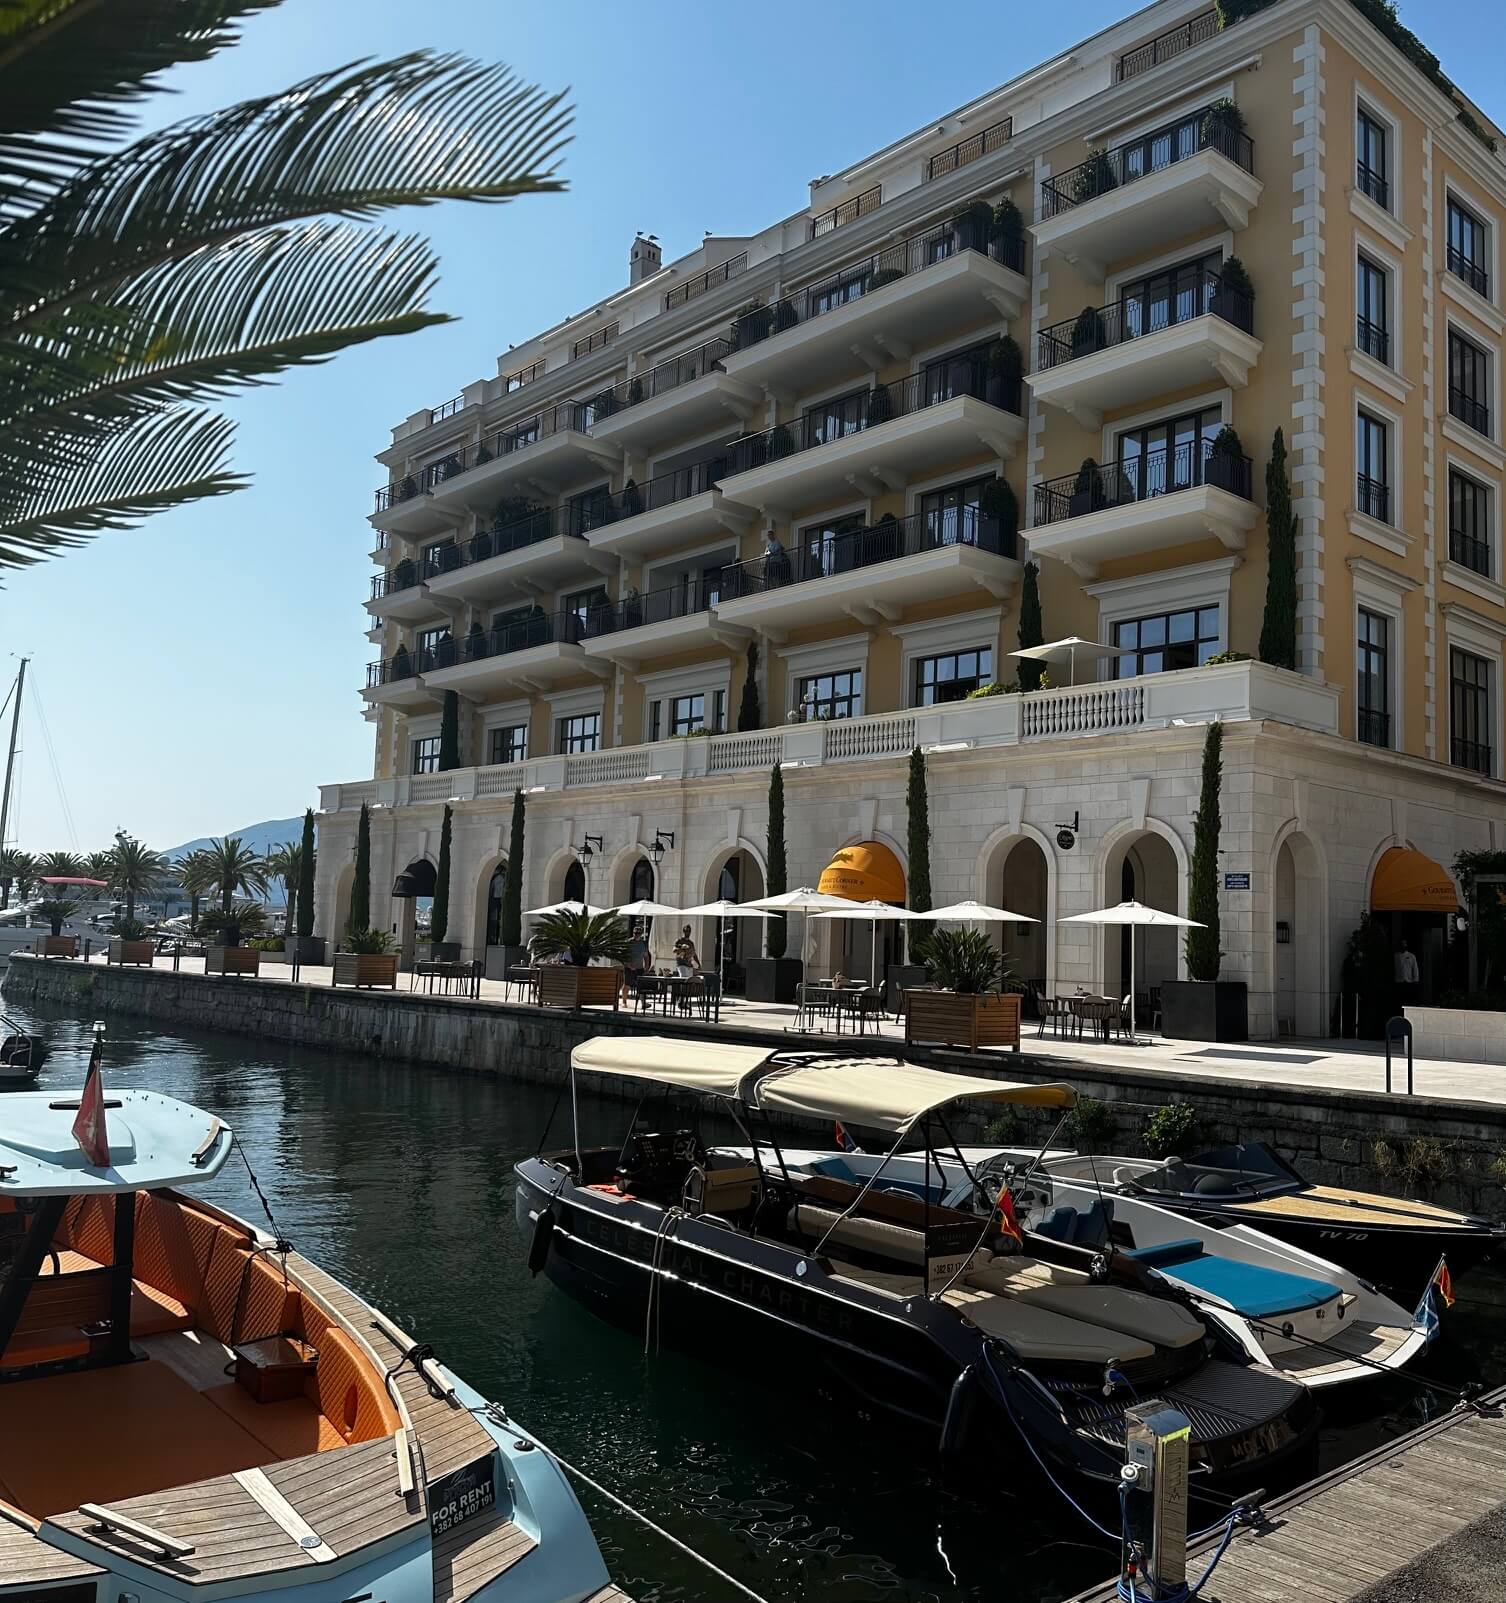 Luxuriöses Hotel am Wasser in Montenegro mit mehreren Balkonen mit Blick auf einen Yachthafen mit kleinen Booten und Yachten. Palmen verleihen der ruhigen Umgebung unter einem klaren blauen Himmel eine tropische Note.